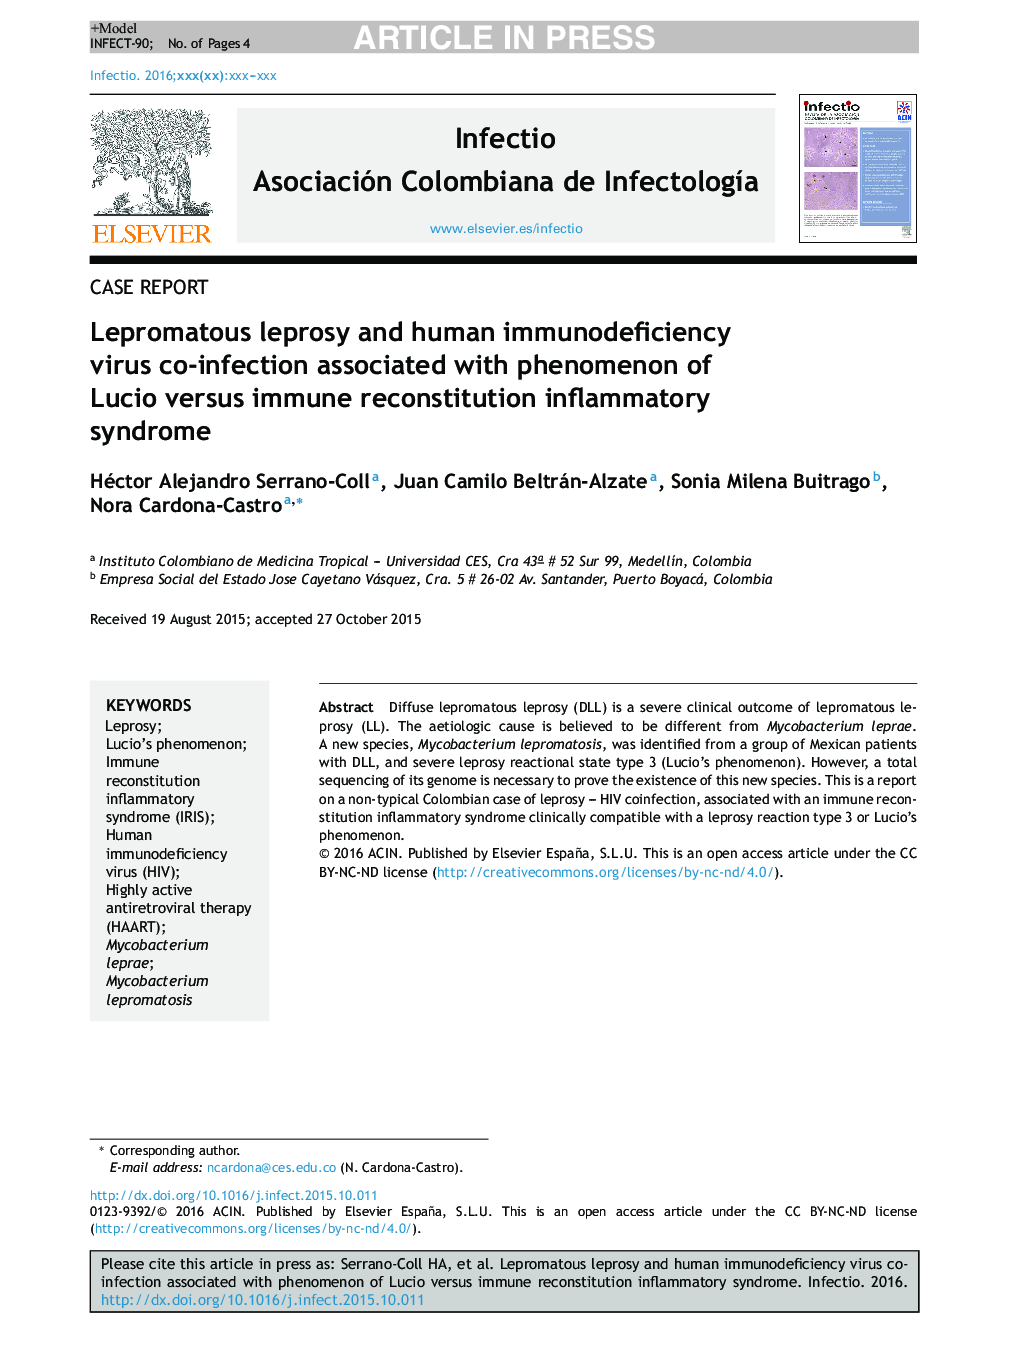 عفونت لپروماتیک و عفونت با ویروس نقص ایمنی بدن در ارتباط با پدیده لوسیو در مقابل سندرم التهابی بازسازی ایمنی 